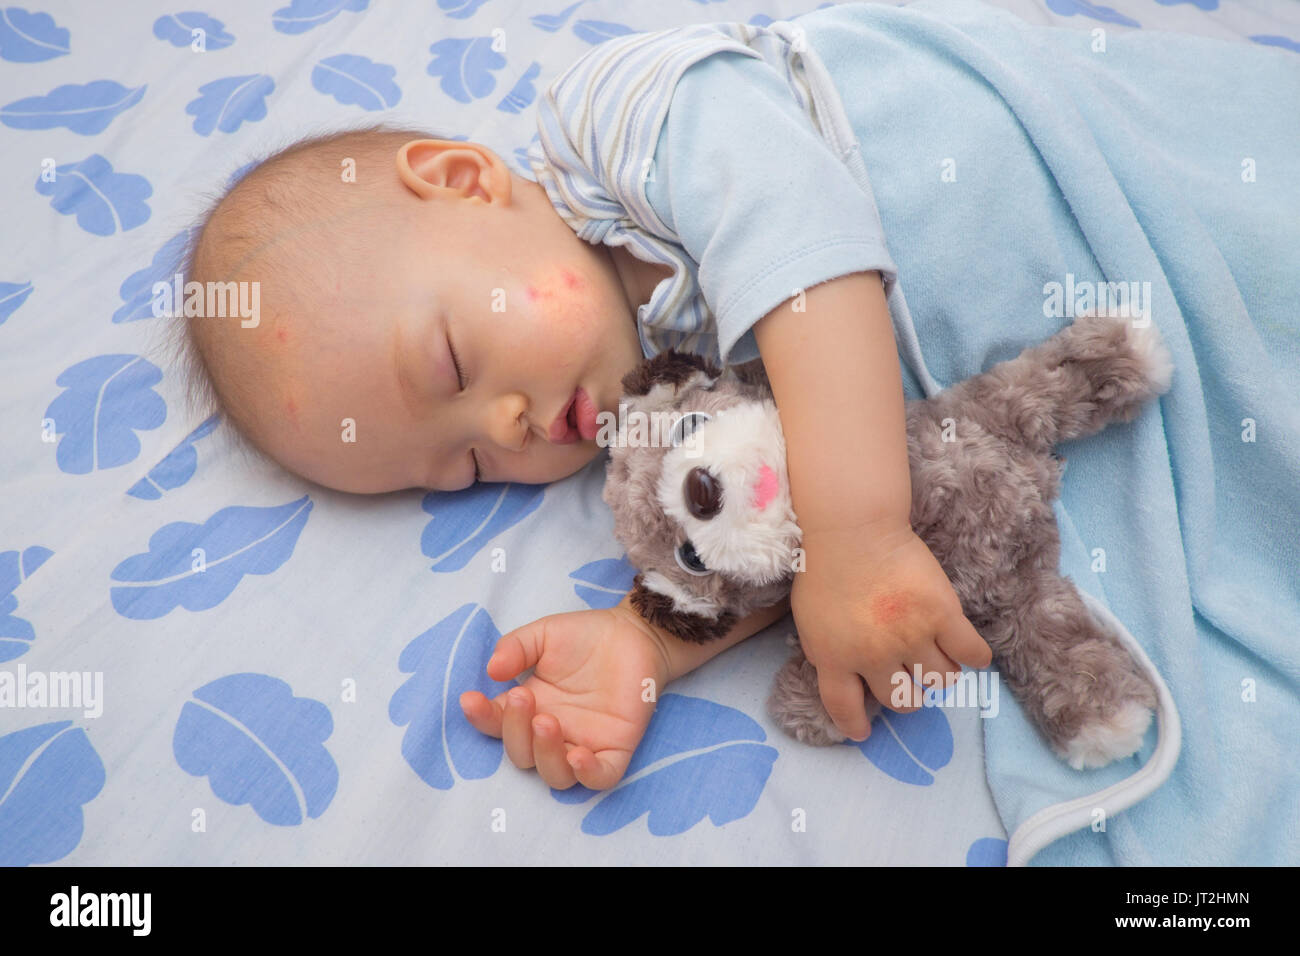 Image bébé asiatique de couchage avec tache rouge à partir de la piqûre de moustique sur une joue et part, mignon 12 mois bébé garçon prendre une sieste en maintenant chien jouet sur le lit Banque D'Images